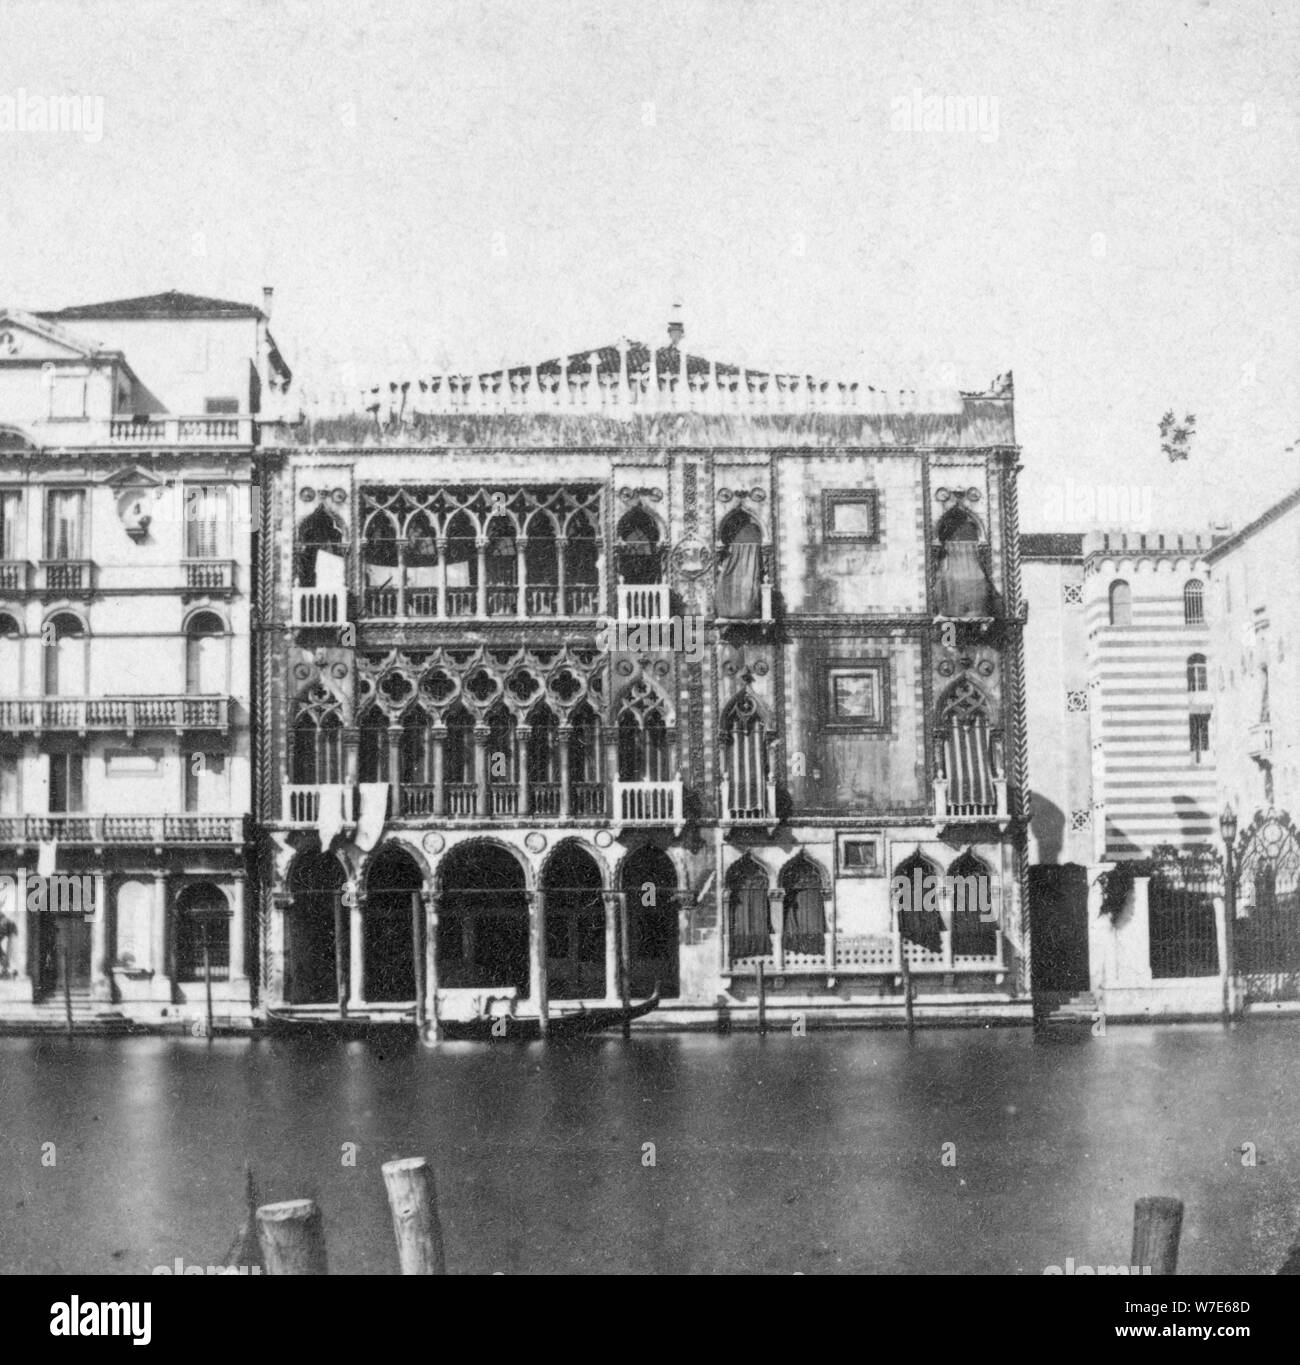 Ca d'Oro, Venezia, Italia, tardo XIX o agli inizi del XX secolo. Artista: sconosciuto Foto Stock